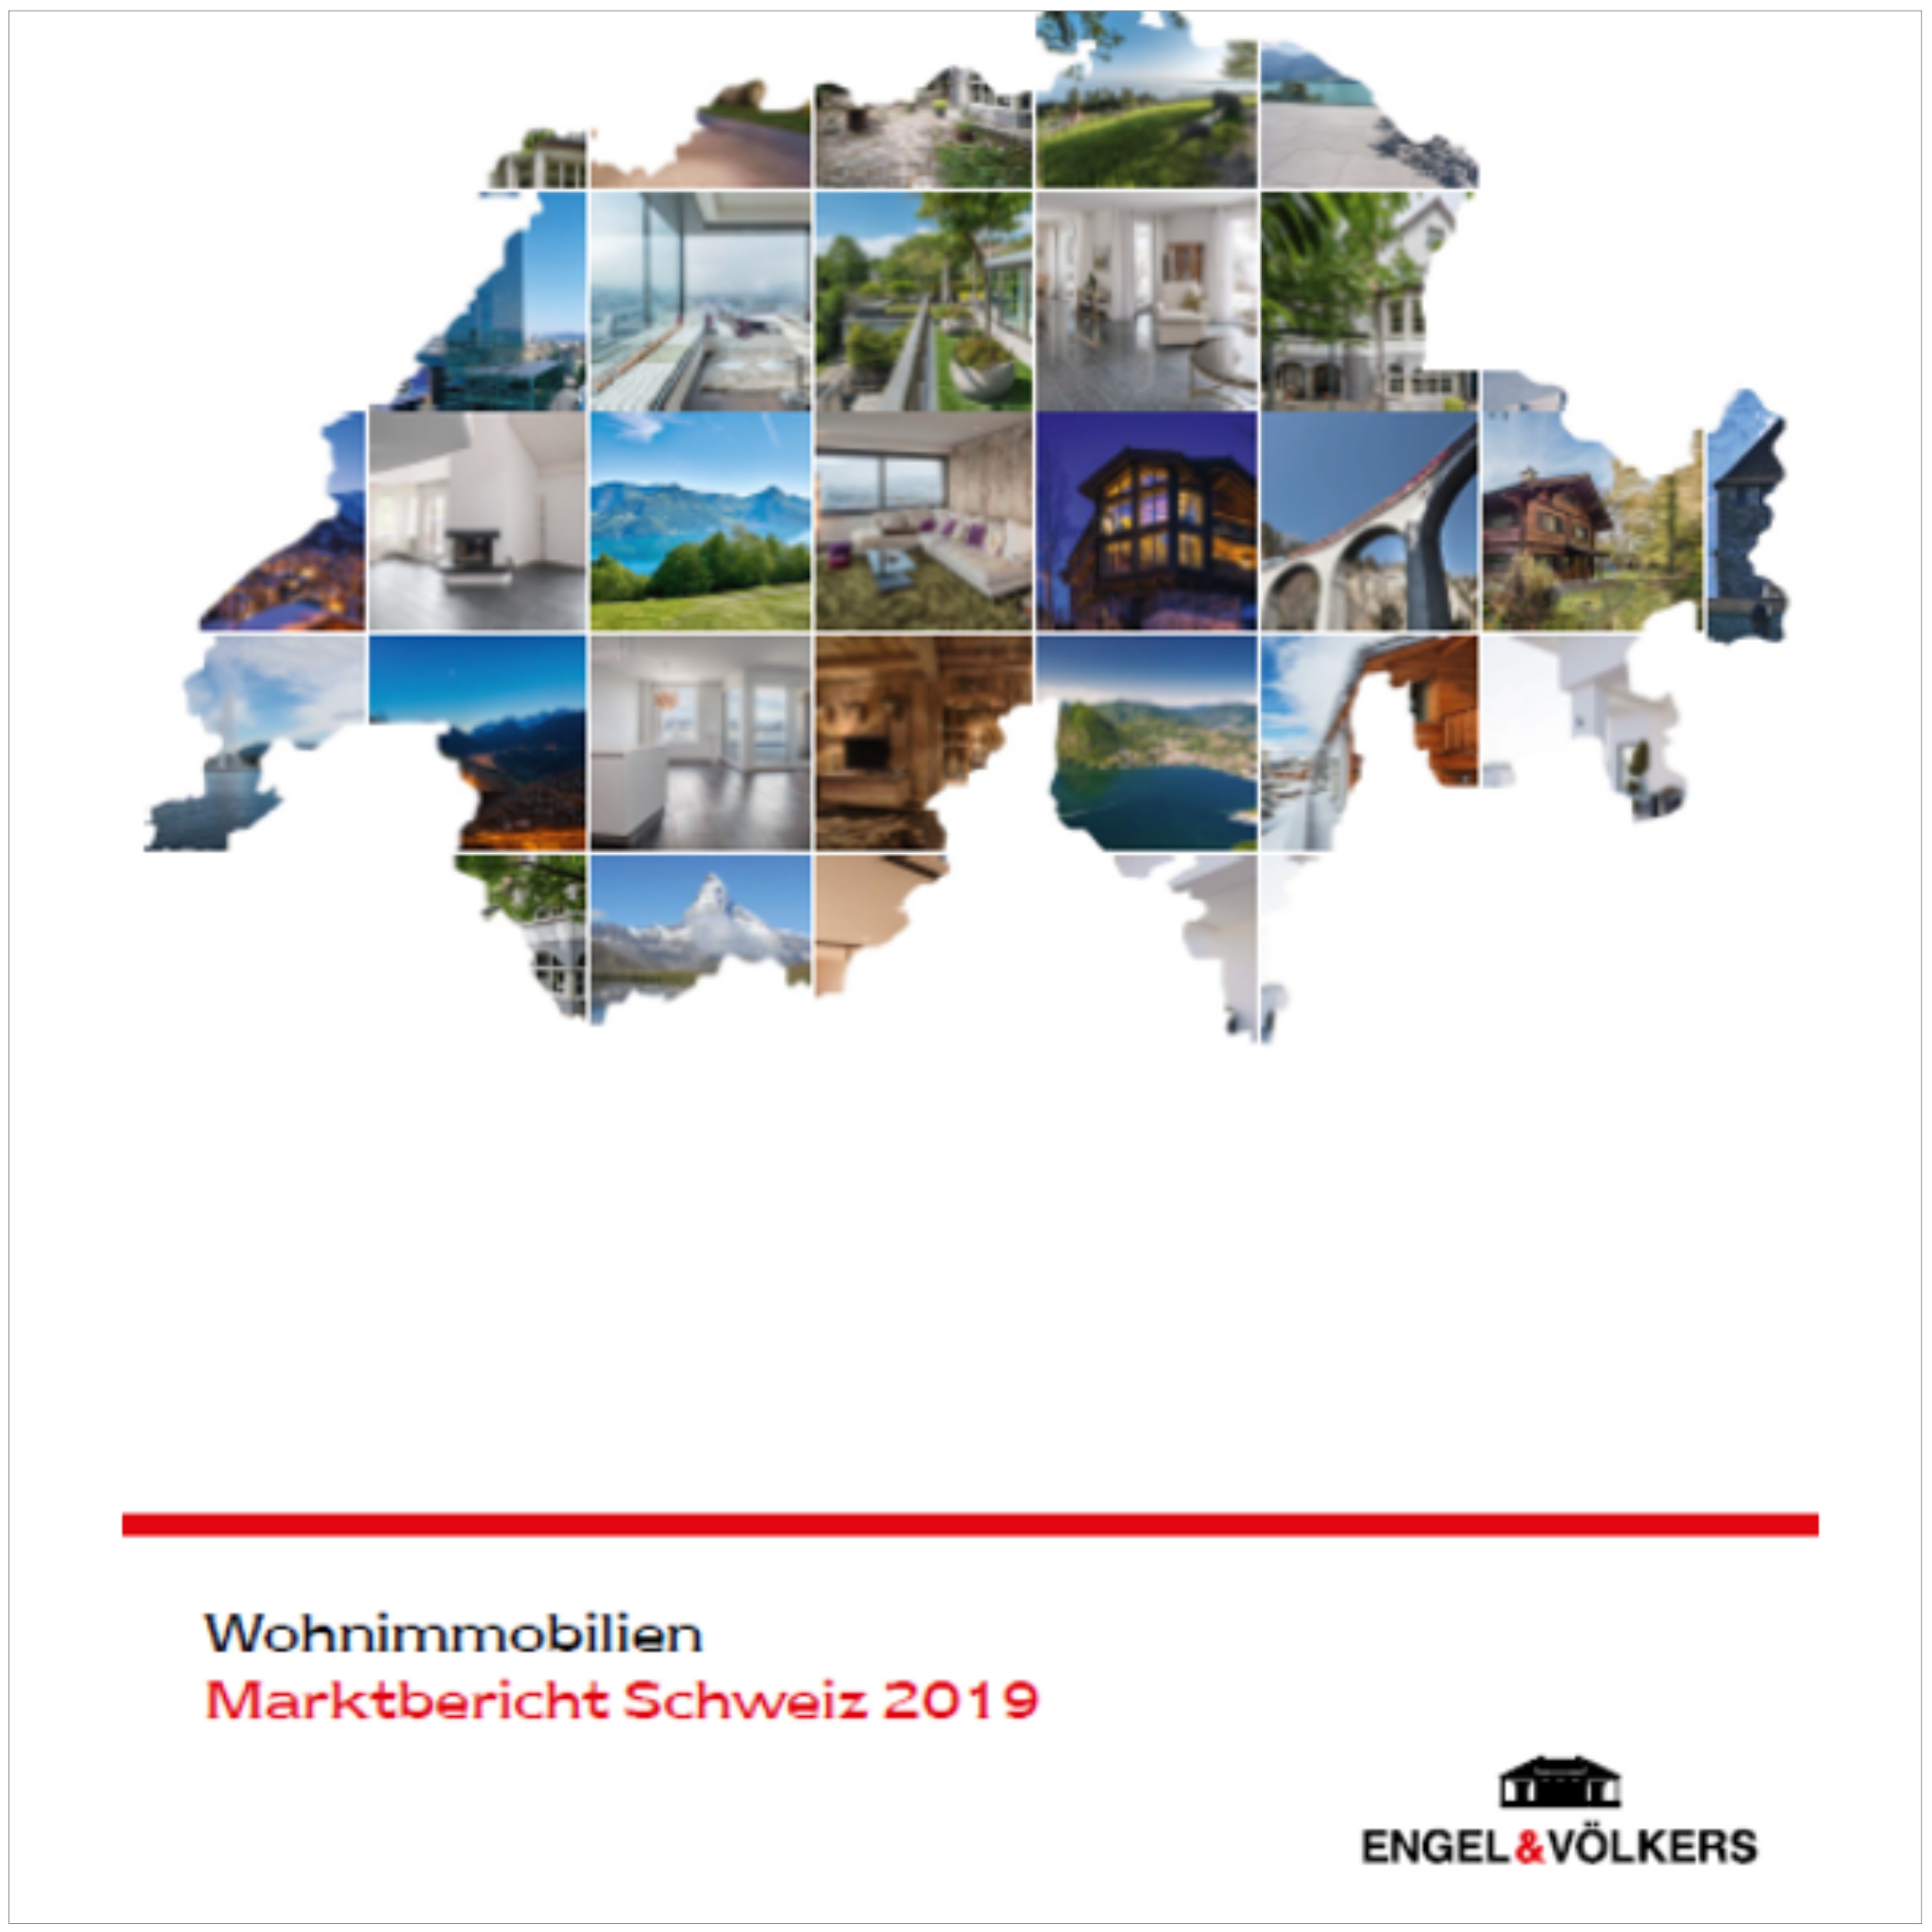 Text und Redaktion für den Immobilienmarktbericht 2019 von Engel & Völkers